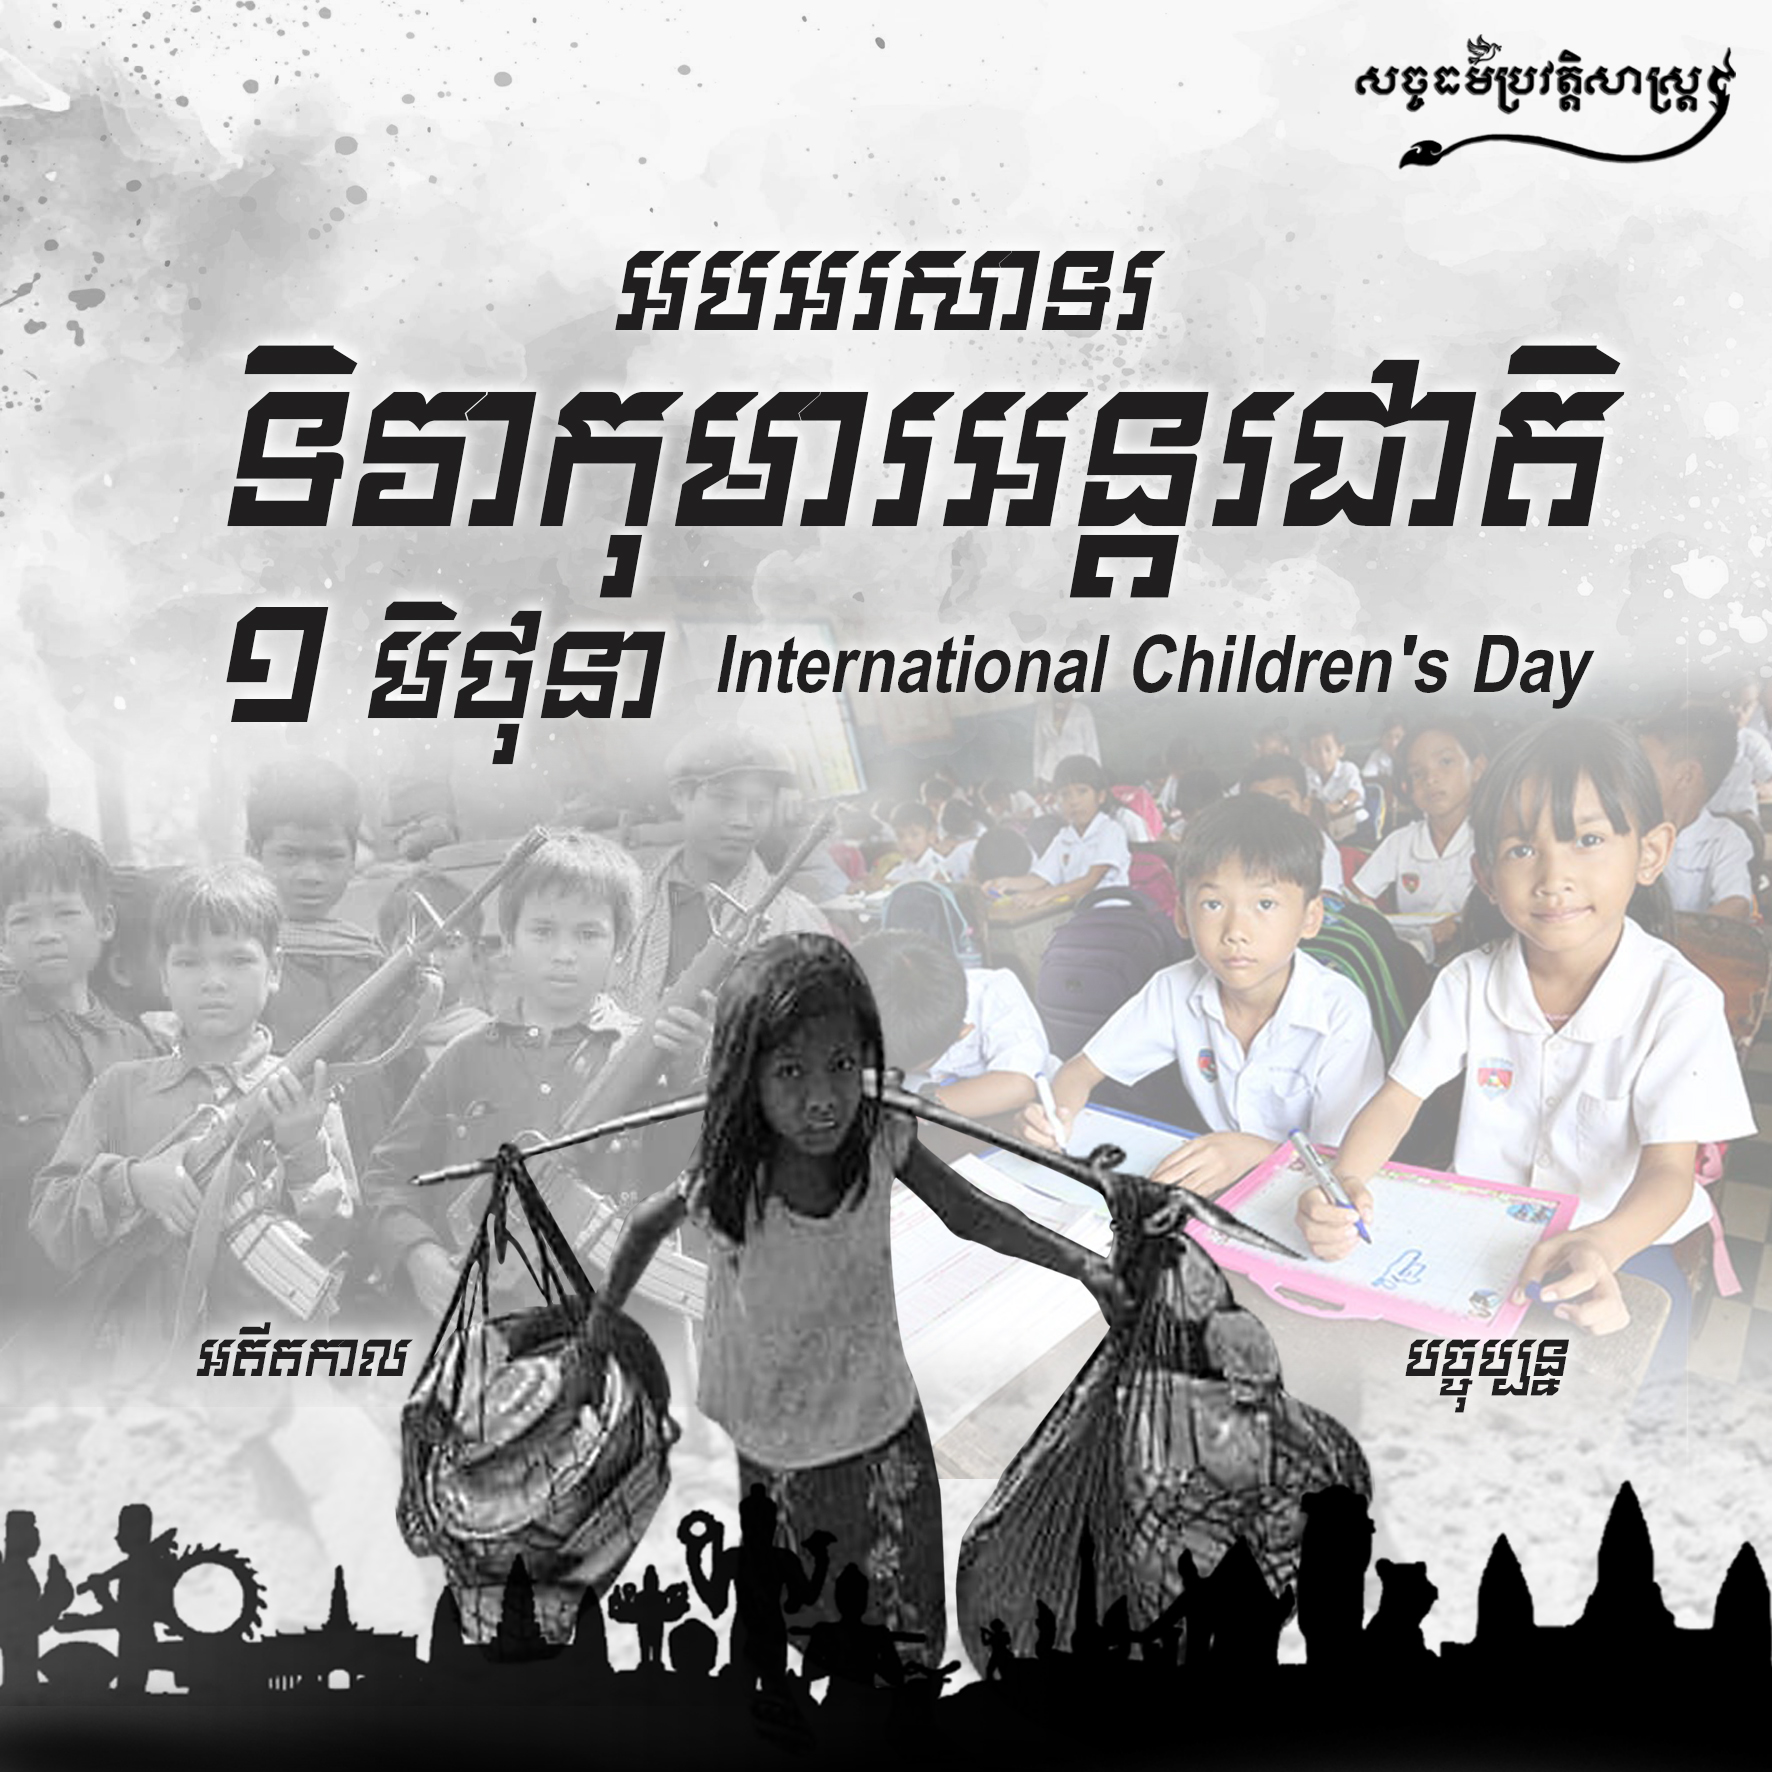 អបអរសាទរទិវាកុមារអន្ដរជាតិ ១ មិថុនា International Children’s Day 